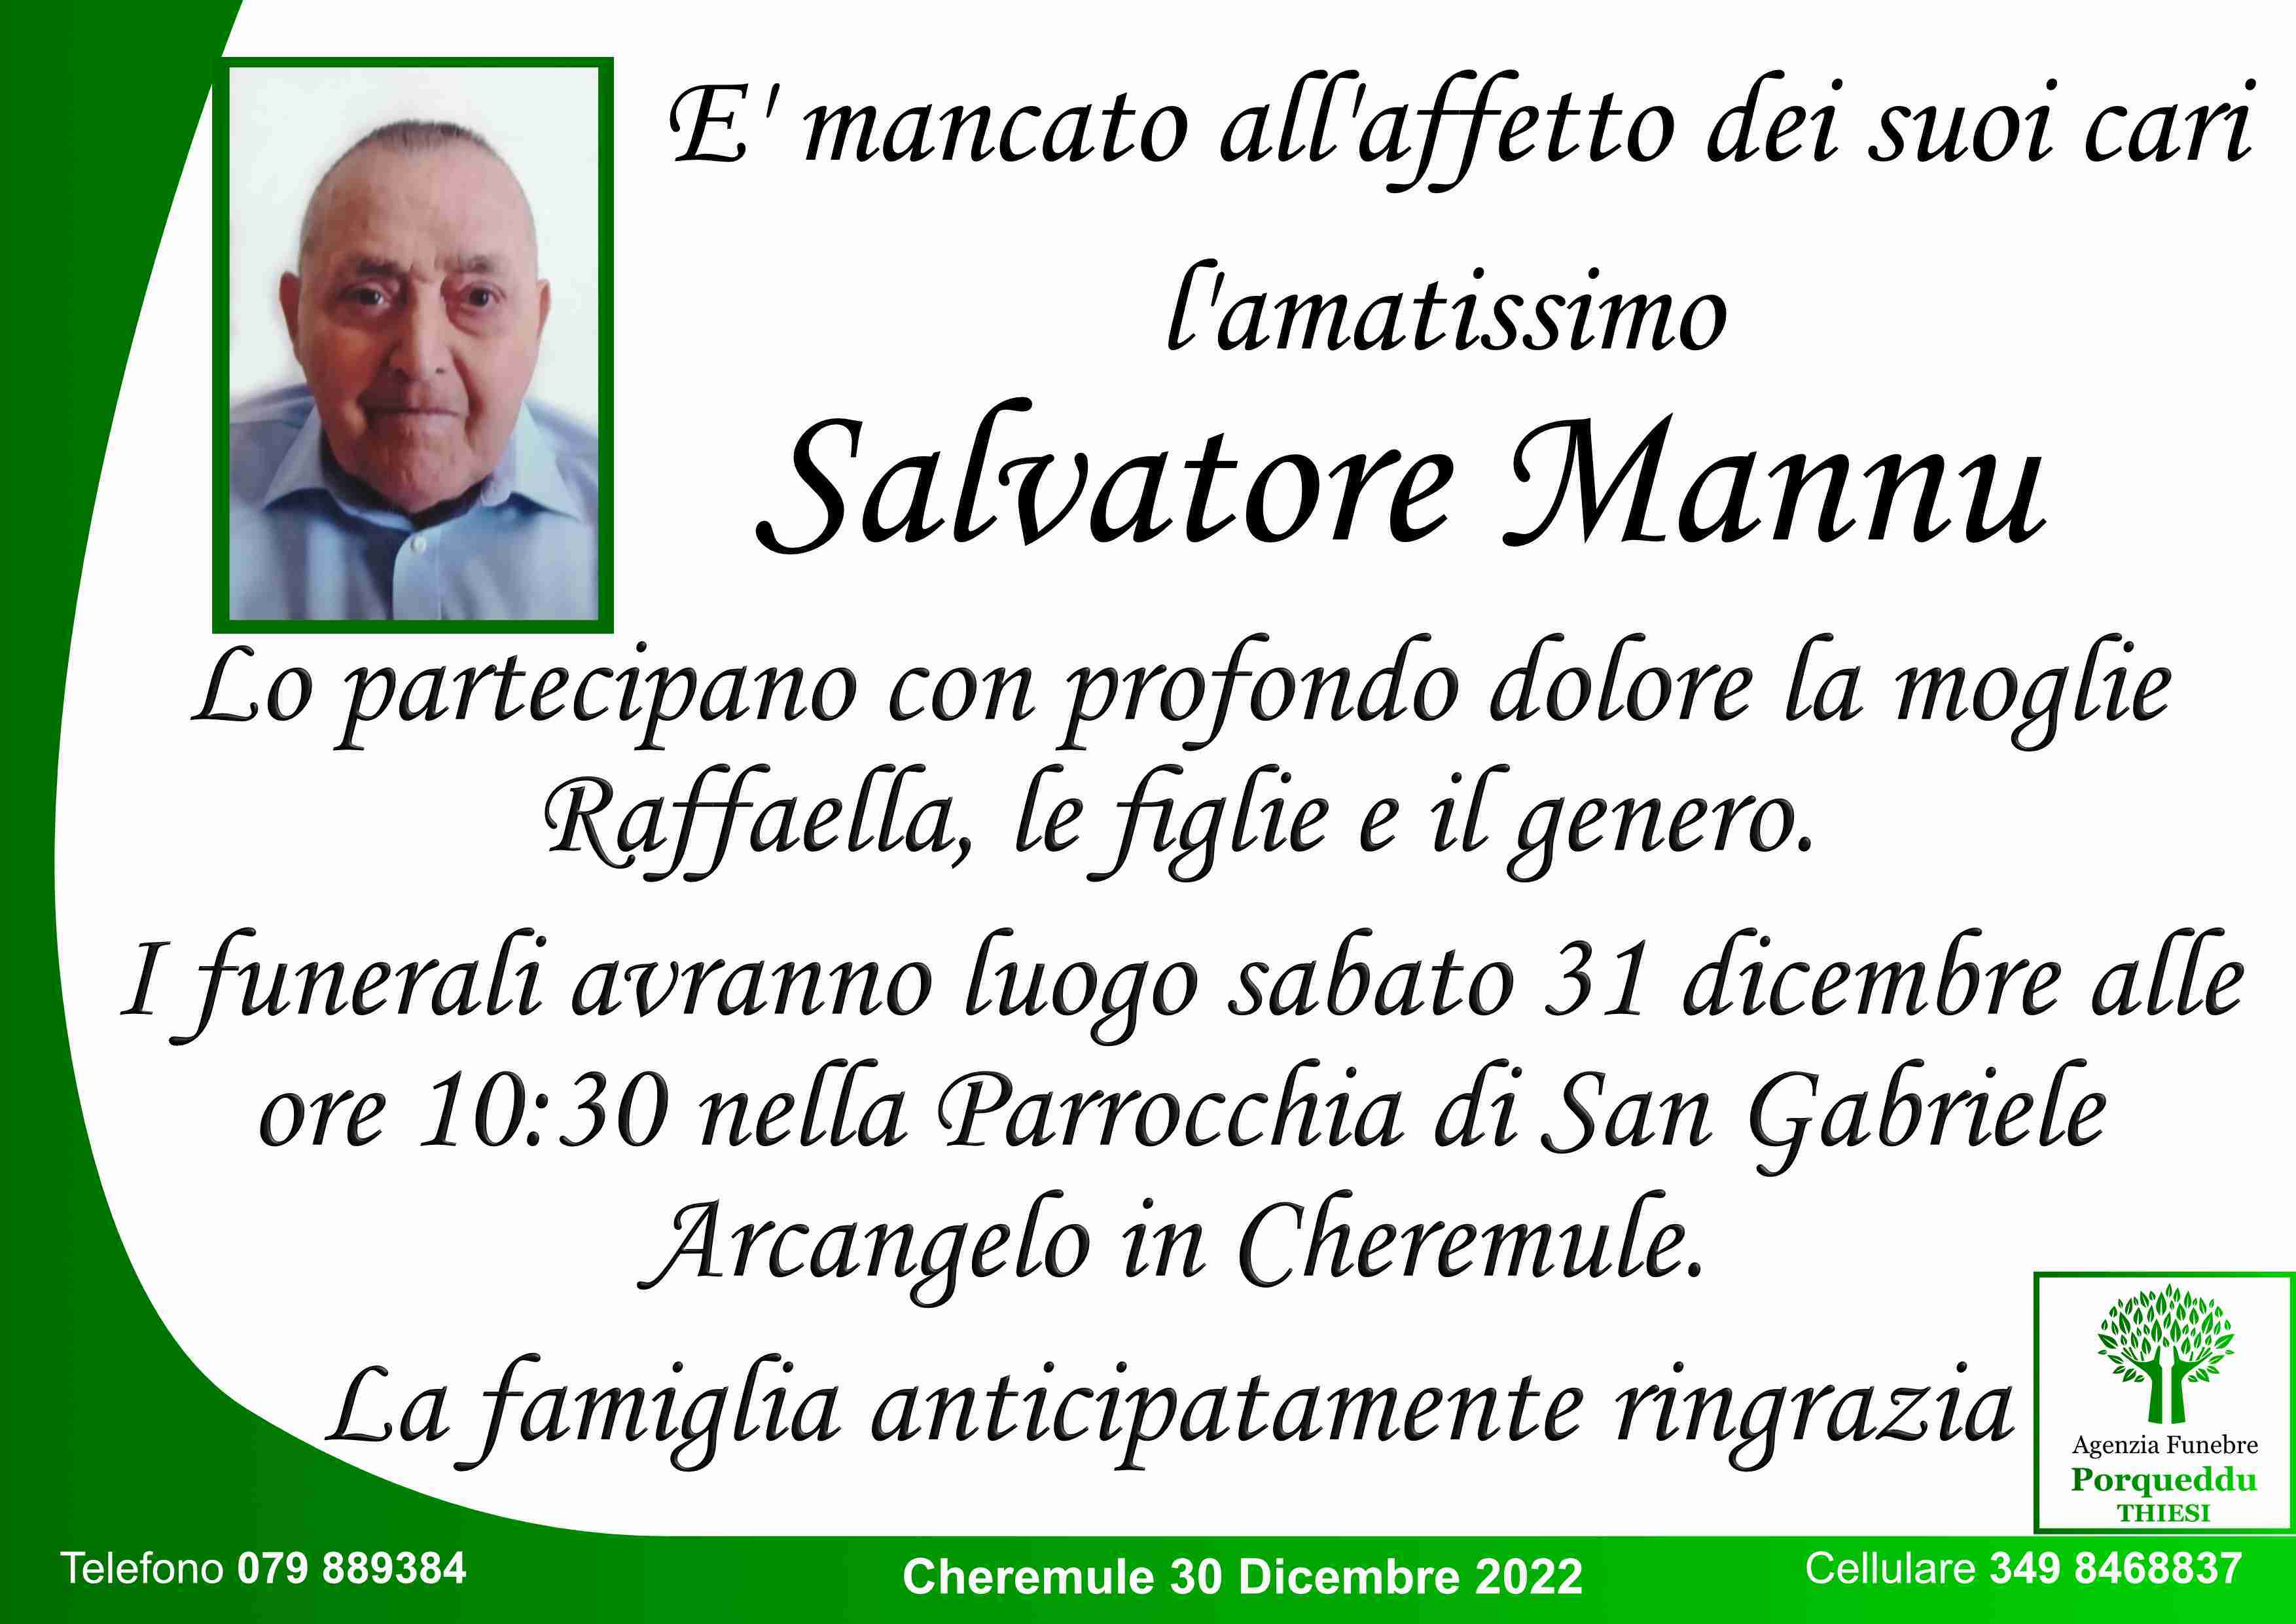 Salvatore Mannu